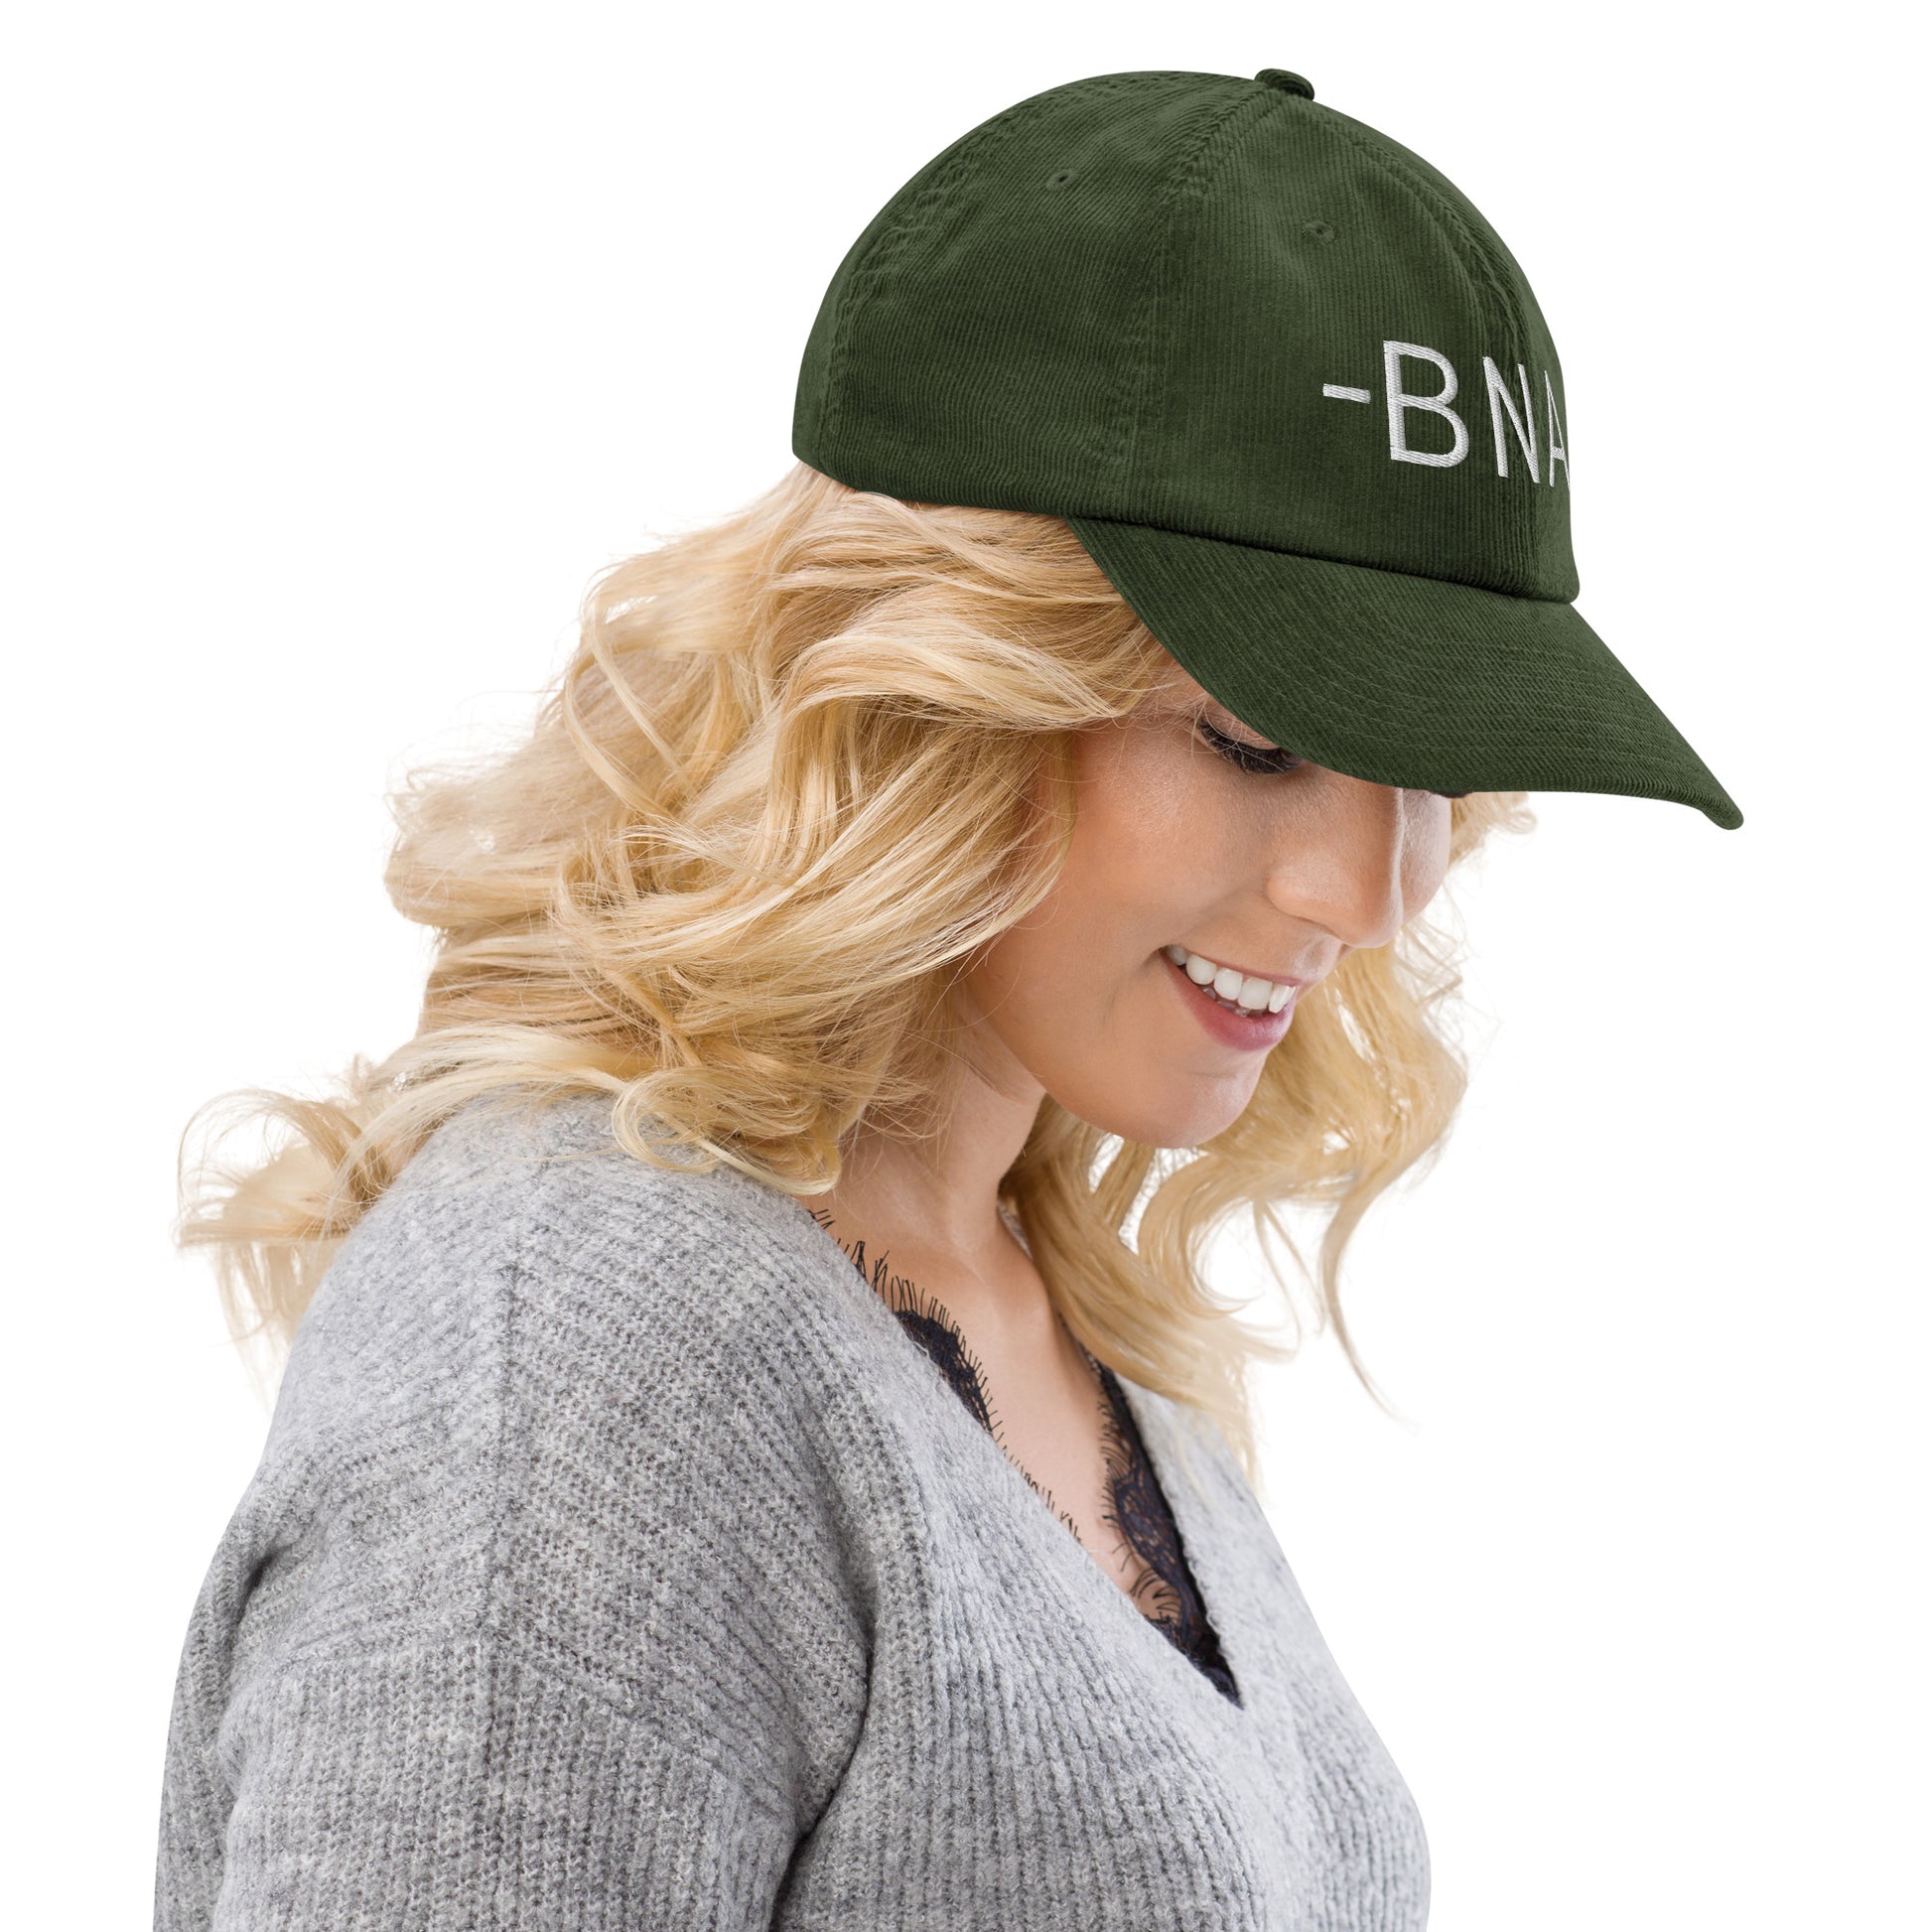 Souvenir Corduroy Hat - White • BNA Nashville • YHM Designs - Image 10